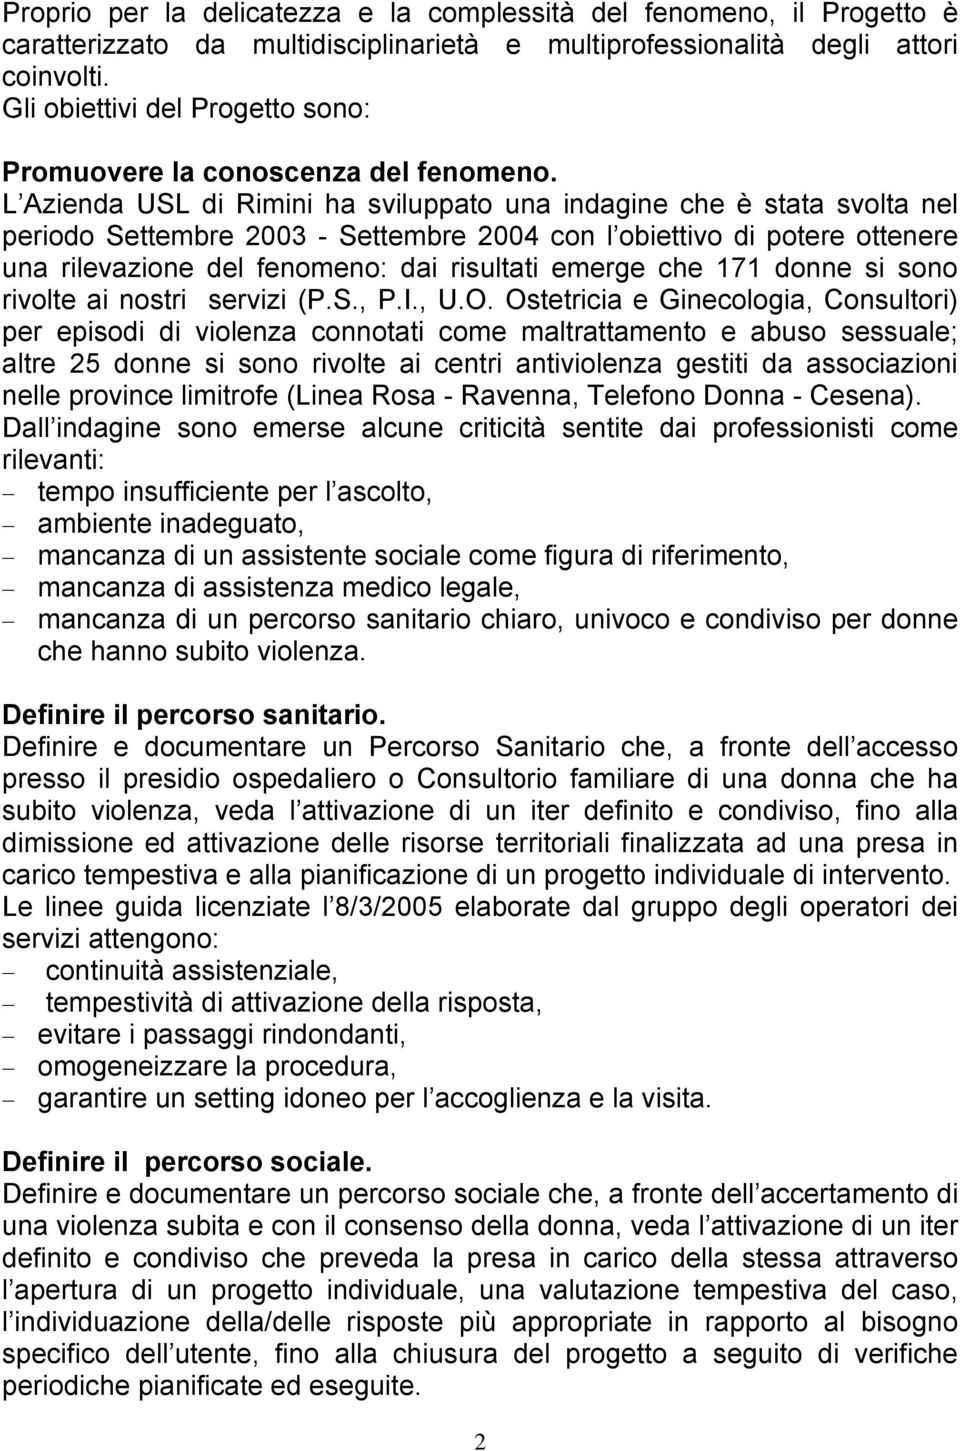 L Azienda USL di Rimini ha sviluppato una indagine che è stata svolta nel periodo Settembre 2003 - Settembre 2004 con l obiettivo di potere ottenere una rilevazione del fenomeno: dai risultati emerge